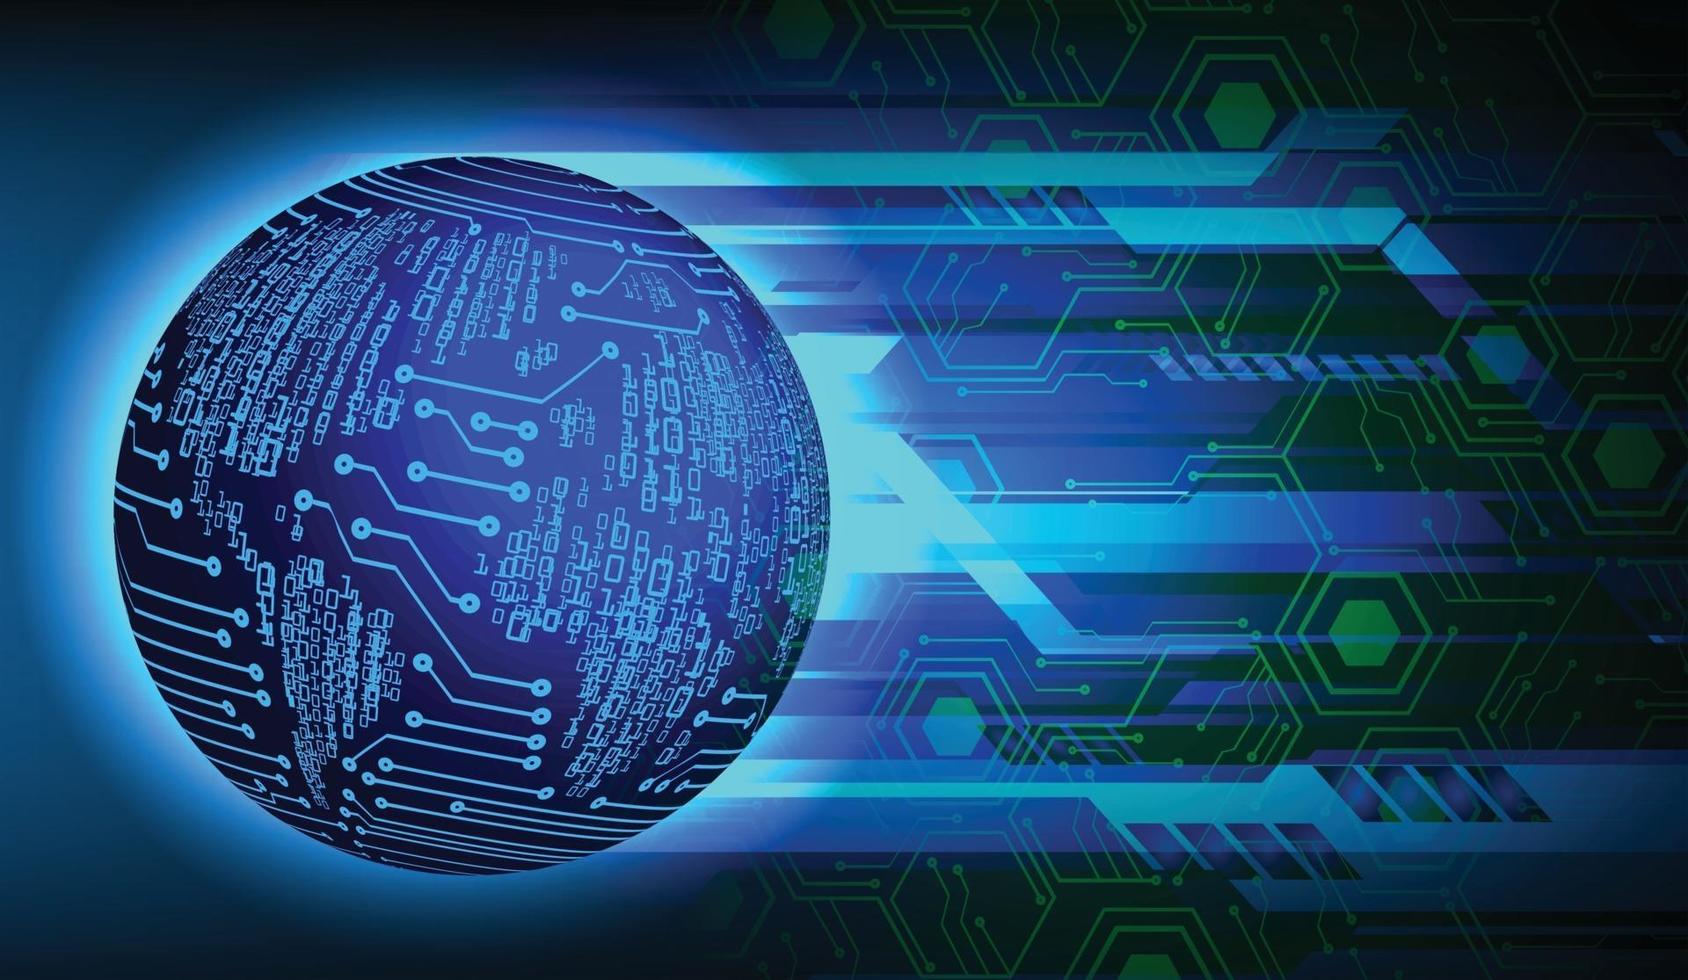 Tecnología futura de la placa de circuito binario mundial, fondo azul del concepto de seguridad cibernética de hud vector